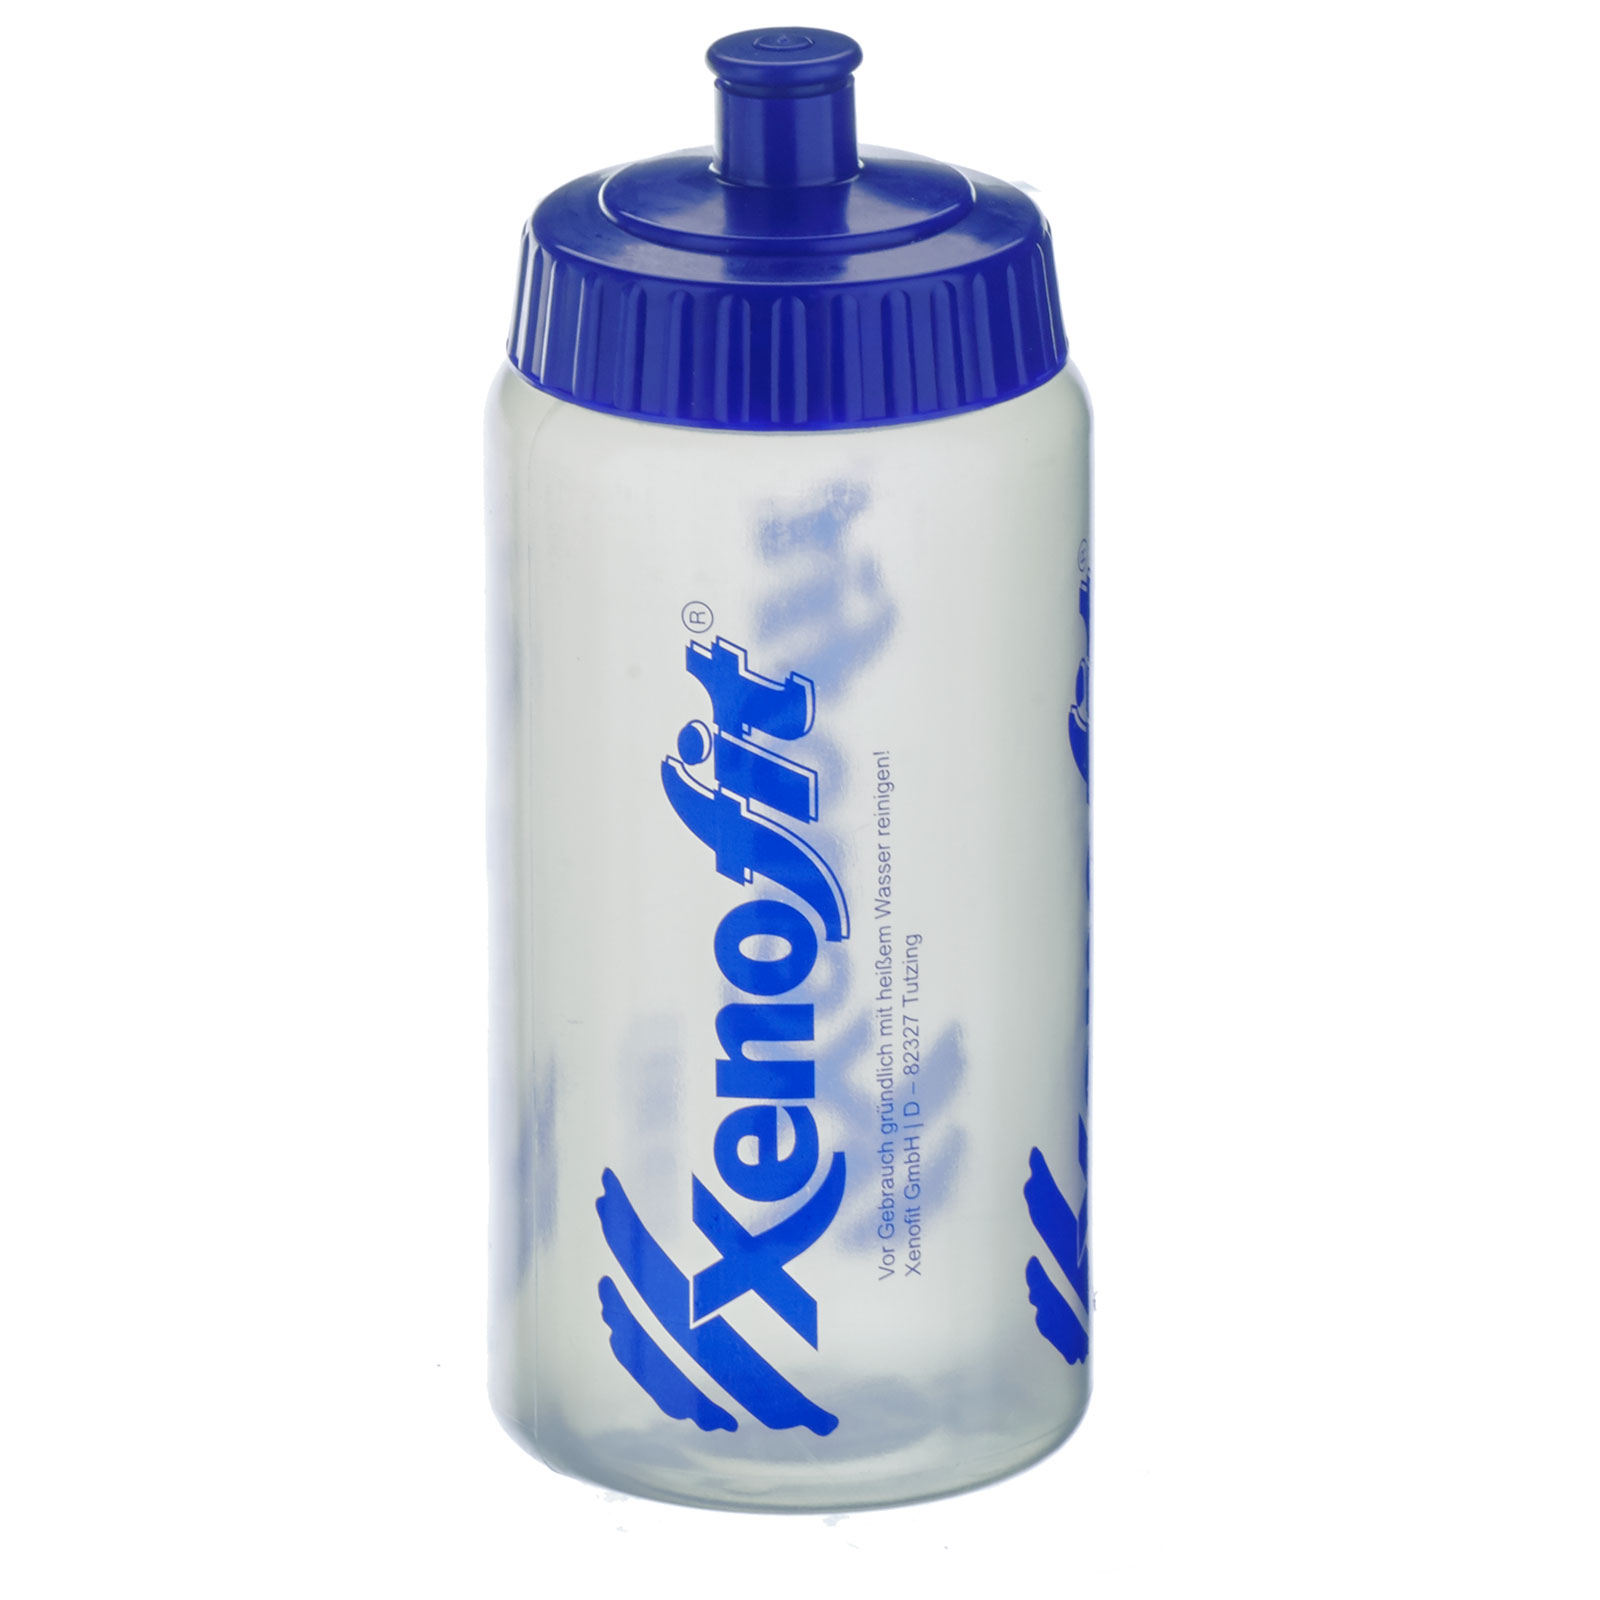 Produktbild von Xenofit Trinkflasche 500ml